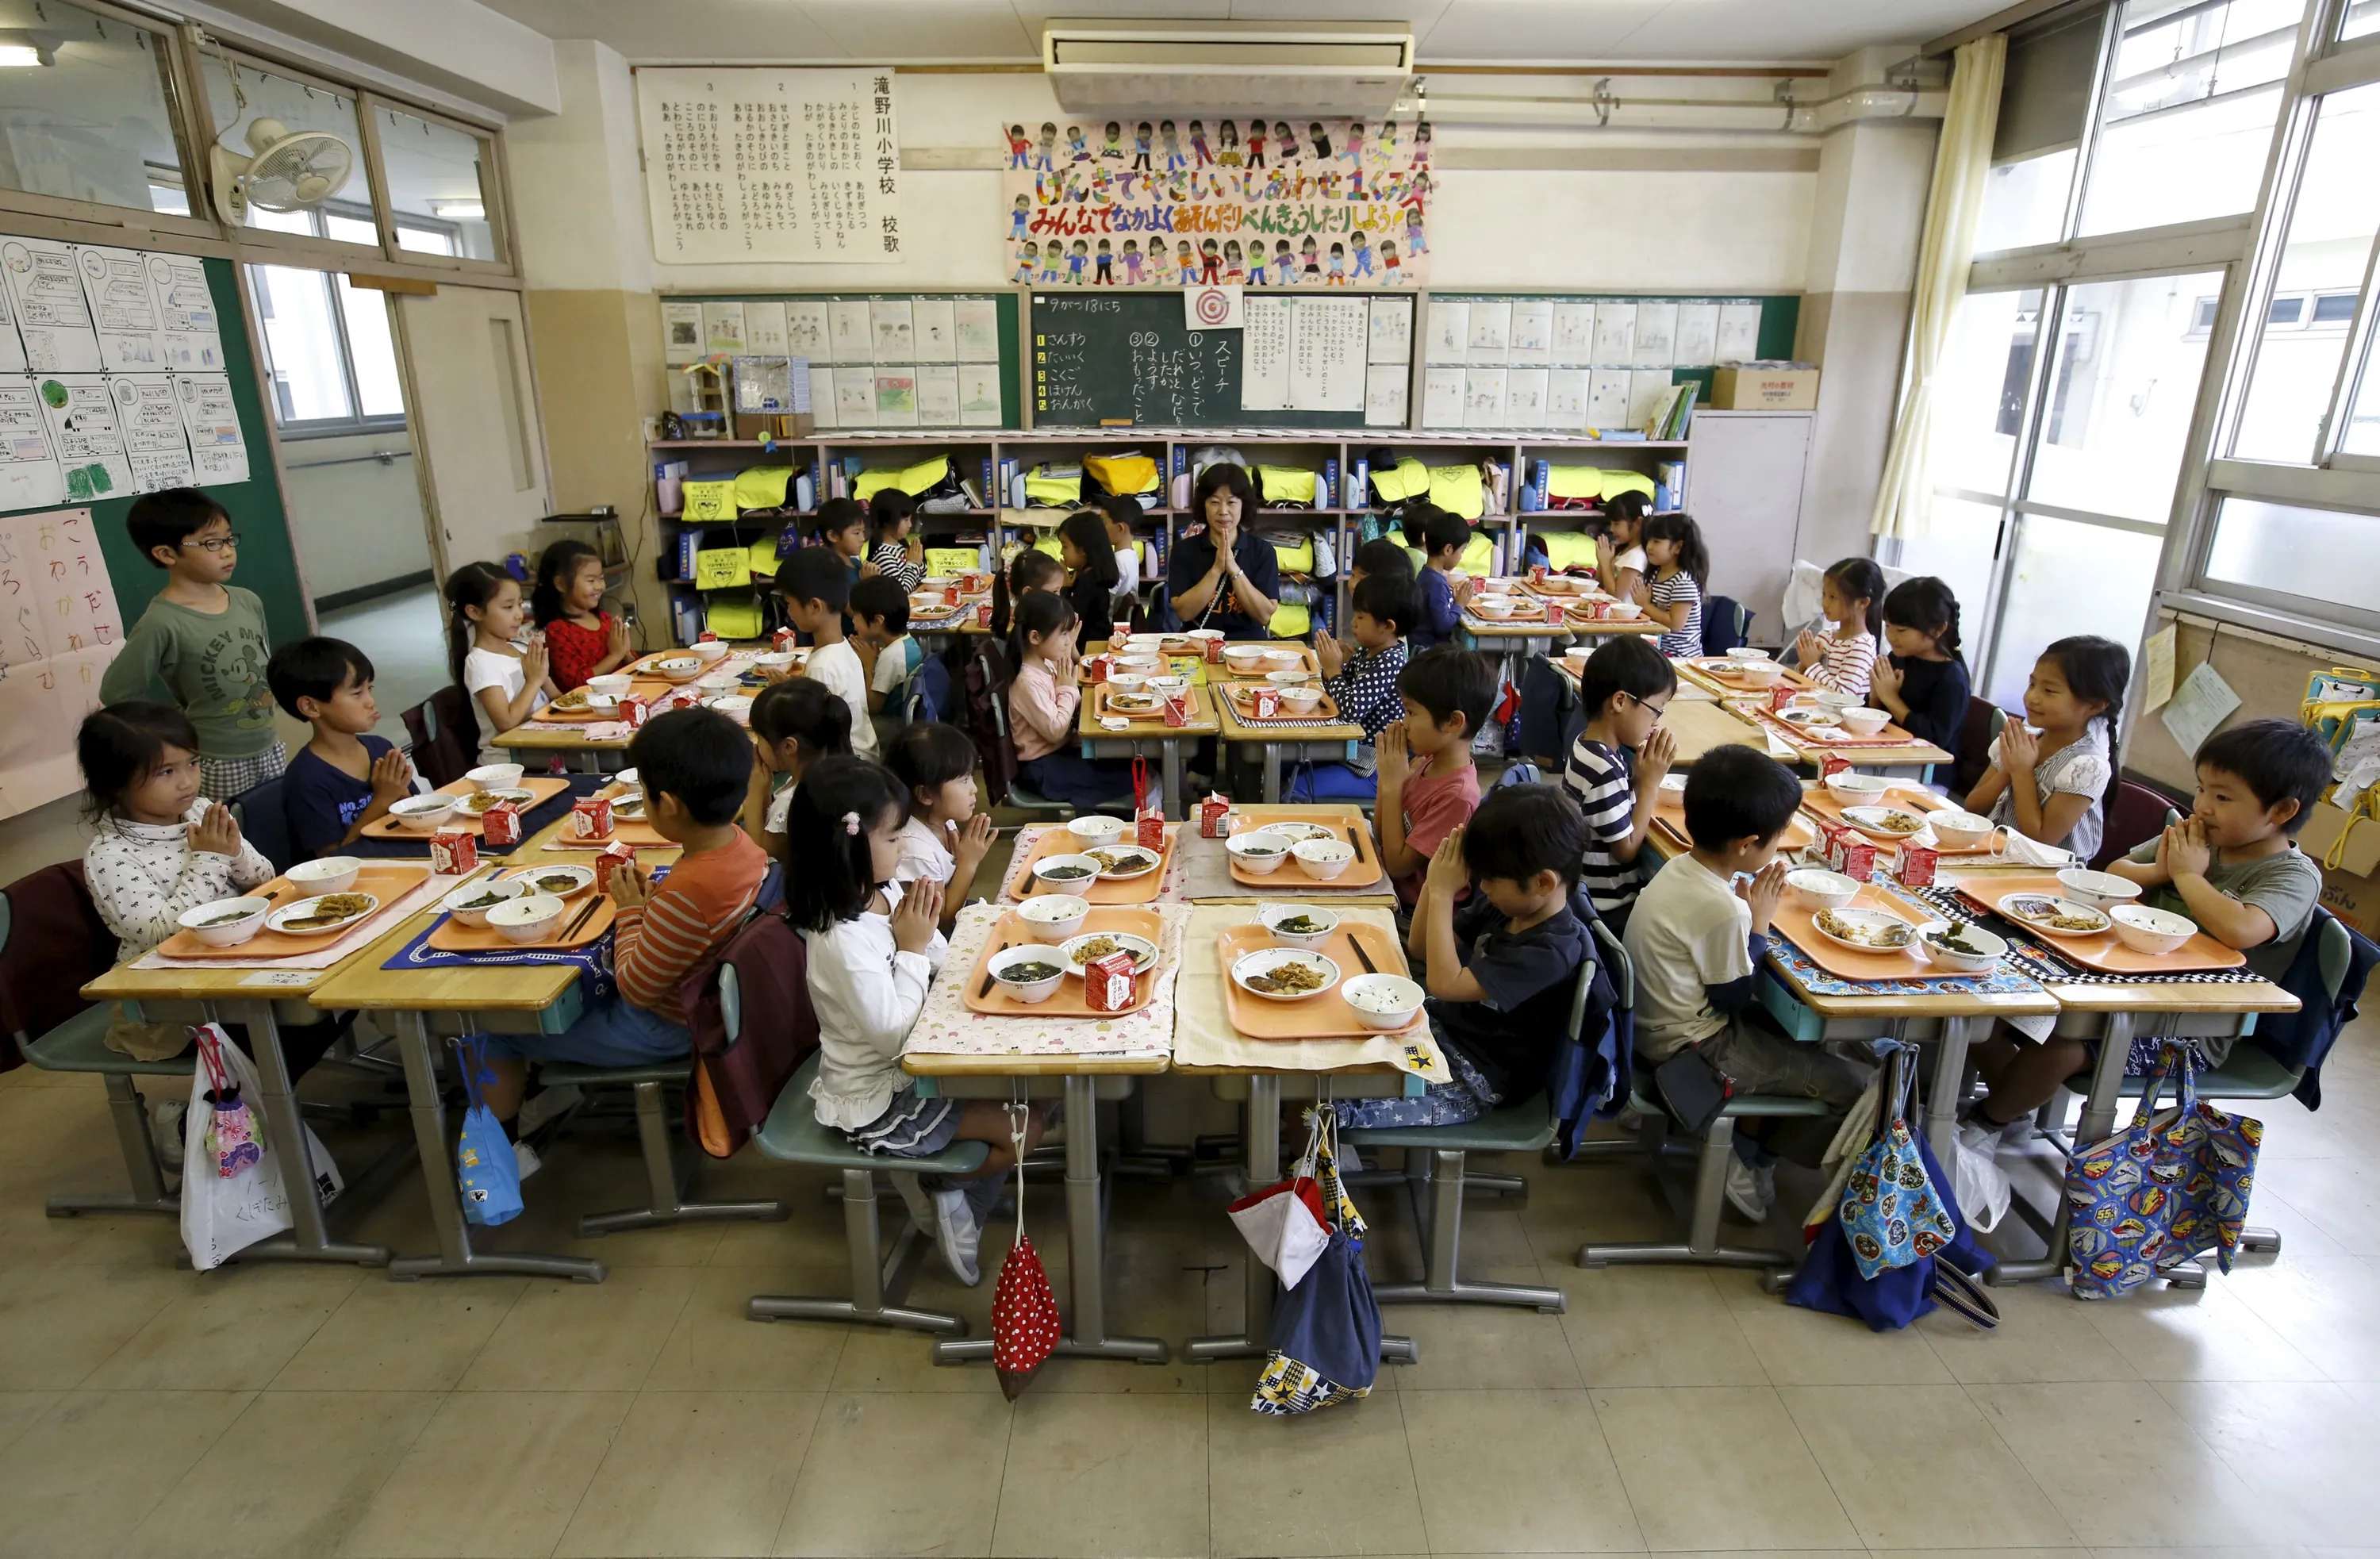 Ученики японской школы. Школа в Японии начальная школа. Школа Сасебо Япония. Япония школа столовая. Столовые в японских школах.